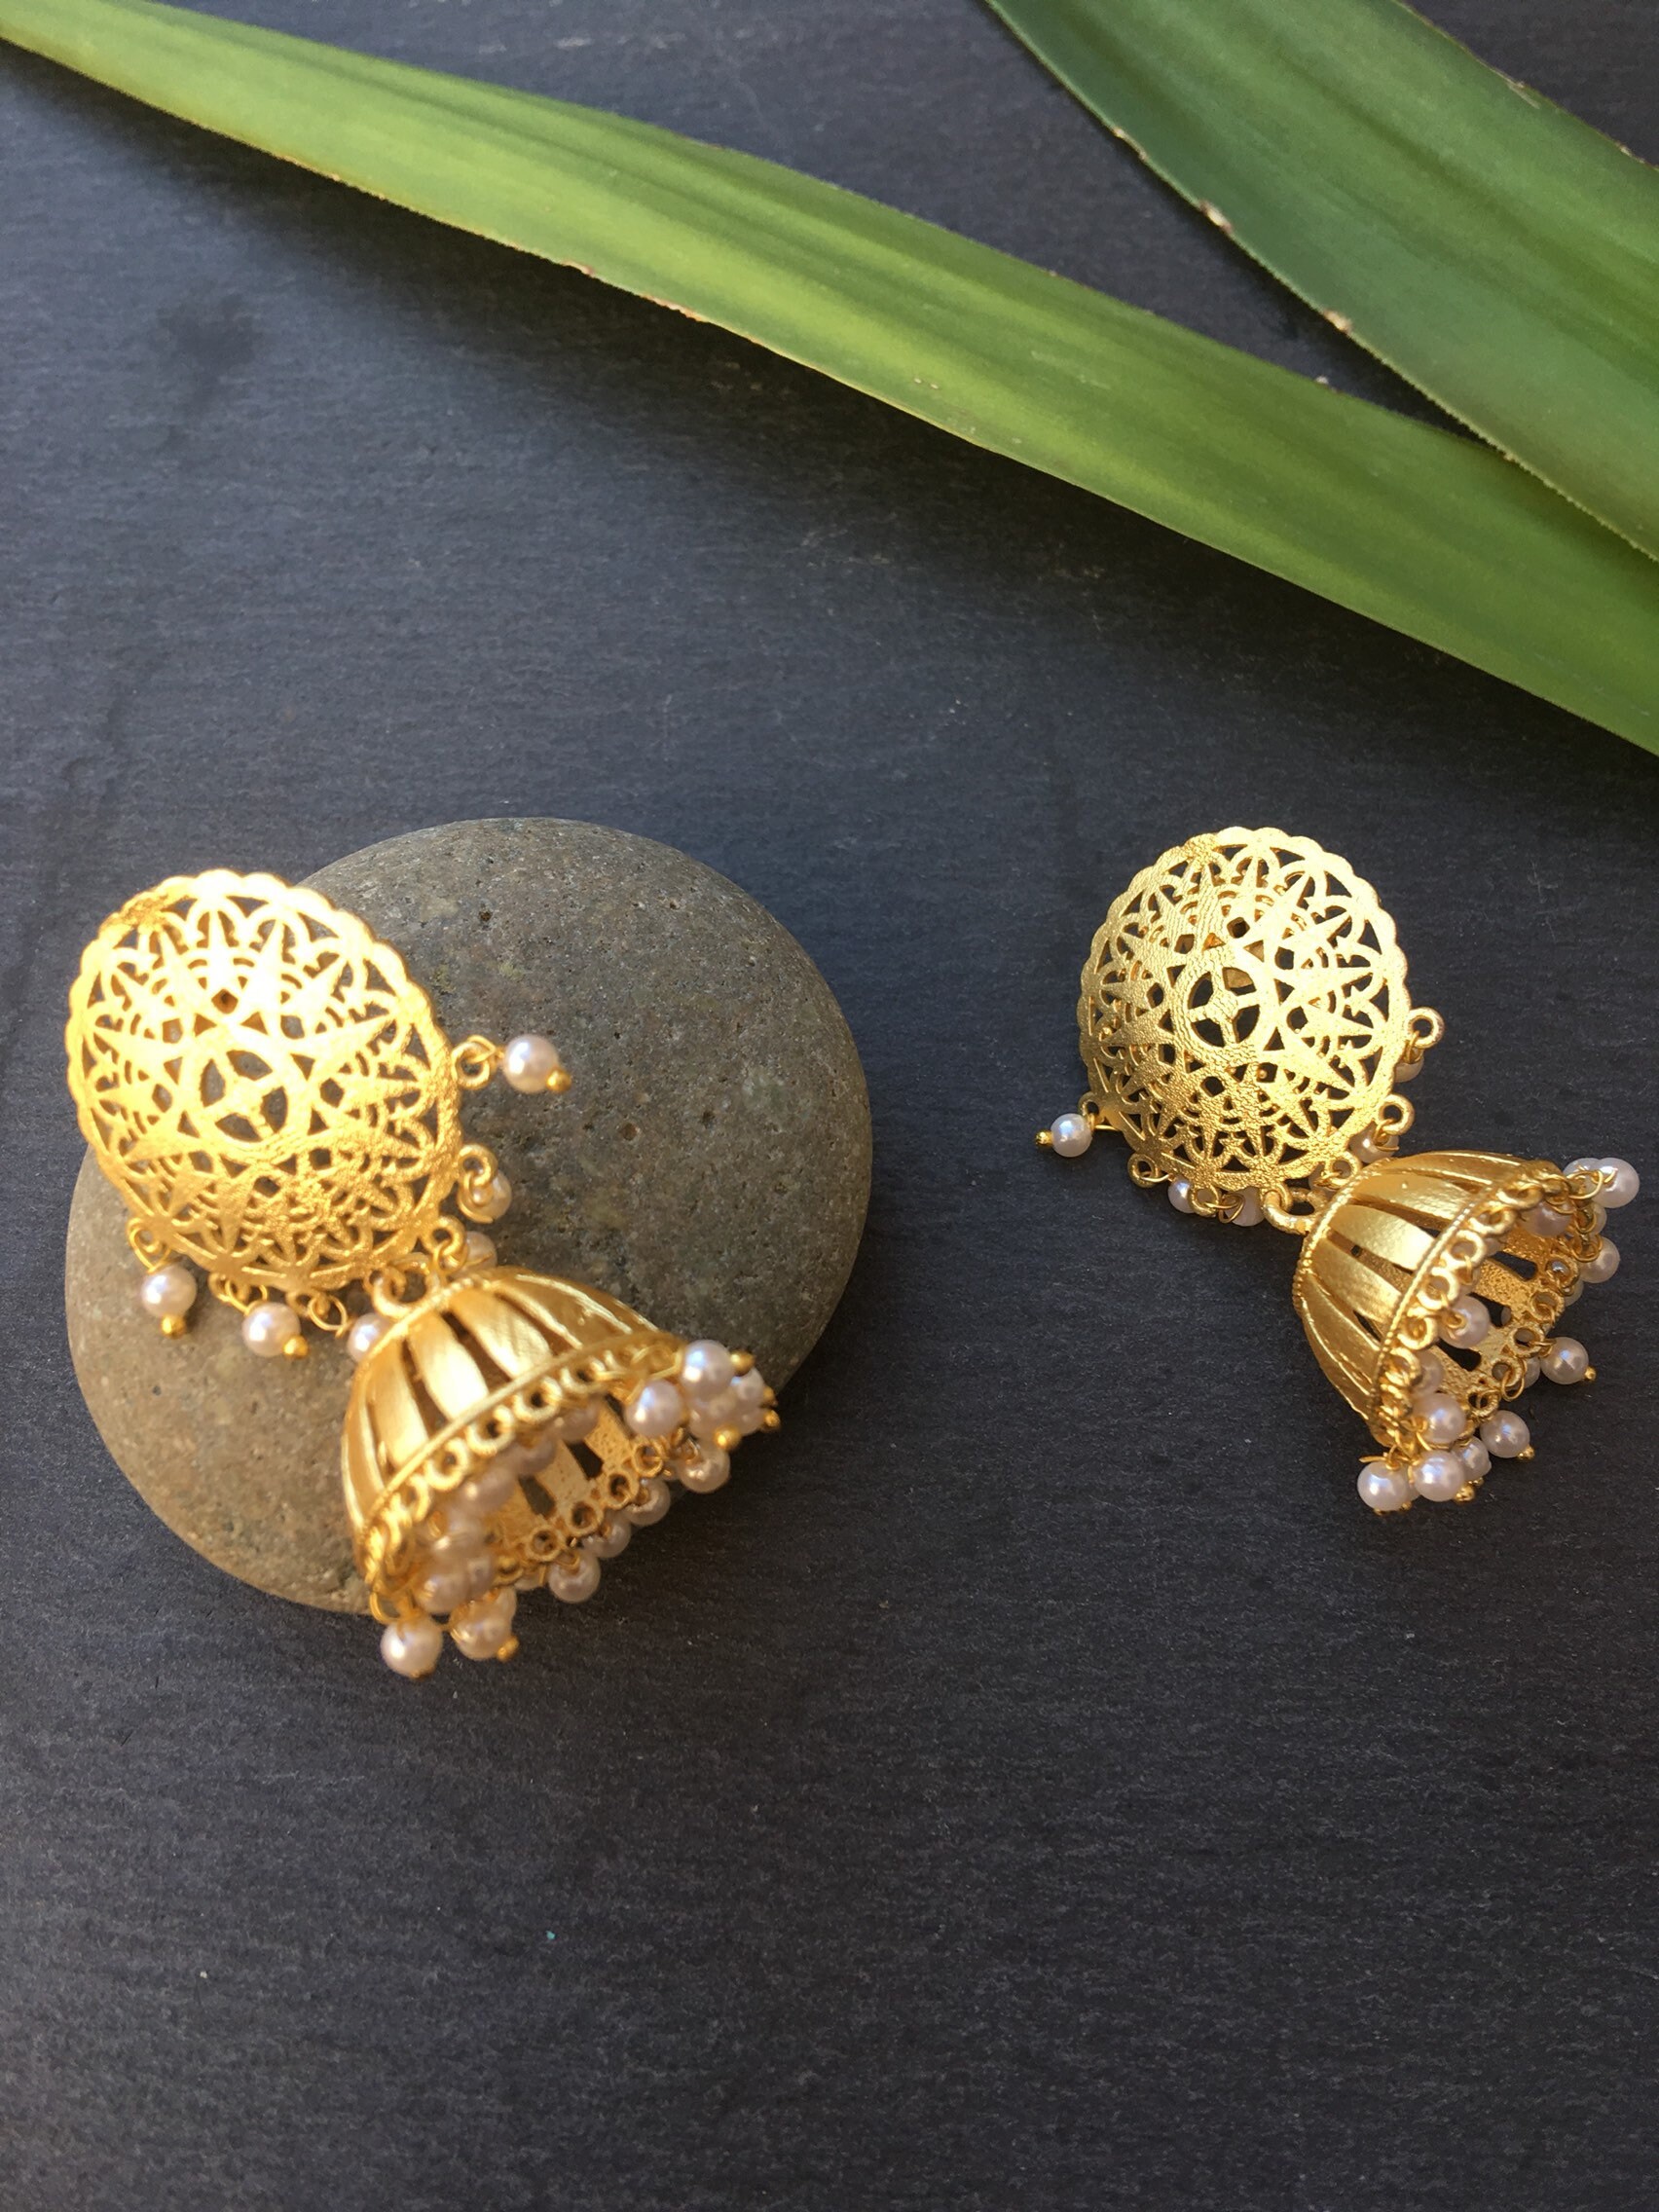 Indian Long Fancy Oxidized Earrings With Jhumkas, Oxidized Silver Jewelry,  Indian Earrings, Indian Jewelry, South Indian Jewelry, Oxidize - Etsy